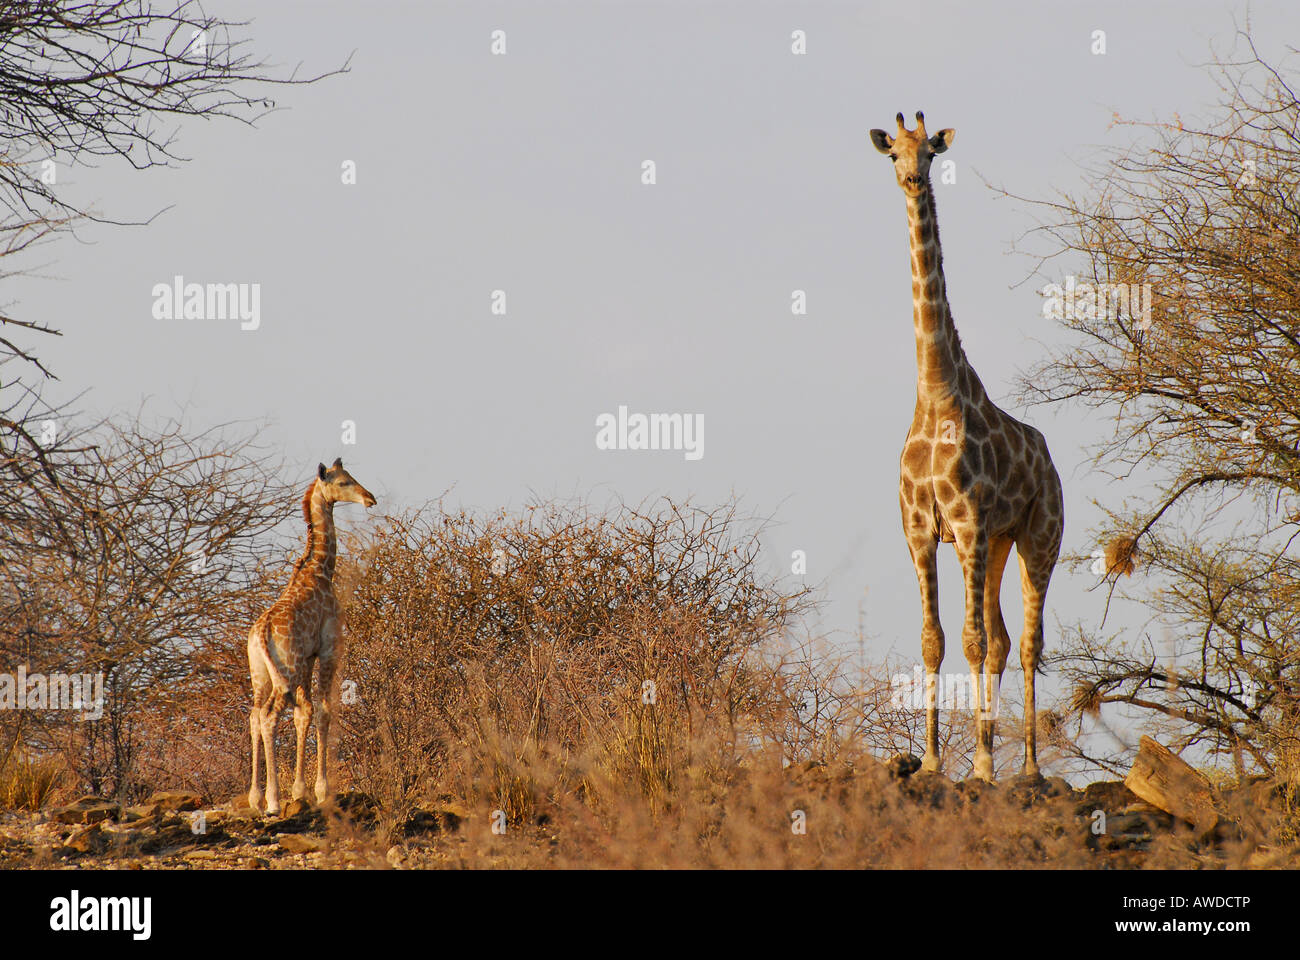 Giraffe mother (Giraffa camelopardalis) with calf at a game farm near Okahandja, Namibia, Africa Stock Photo